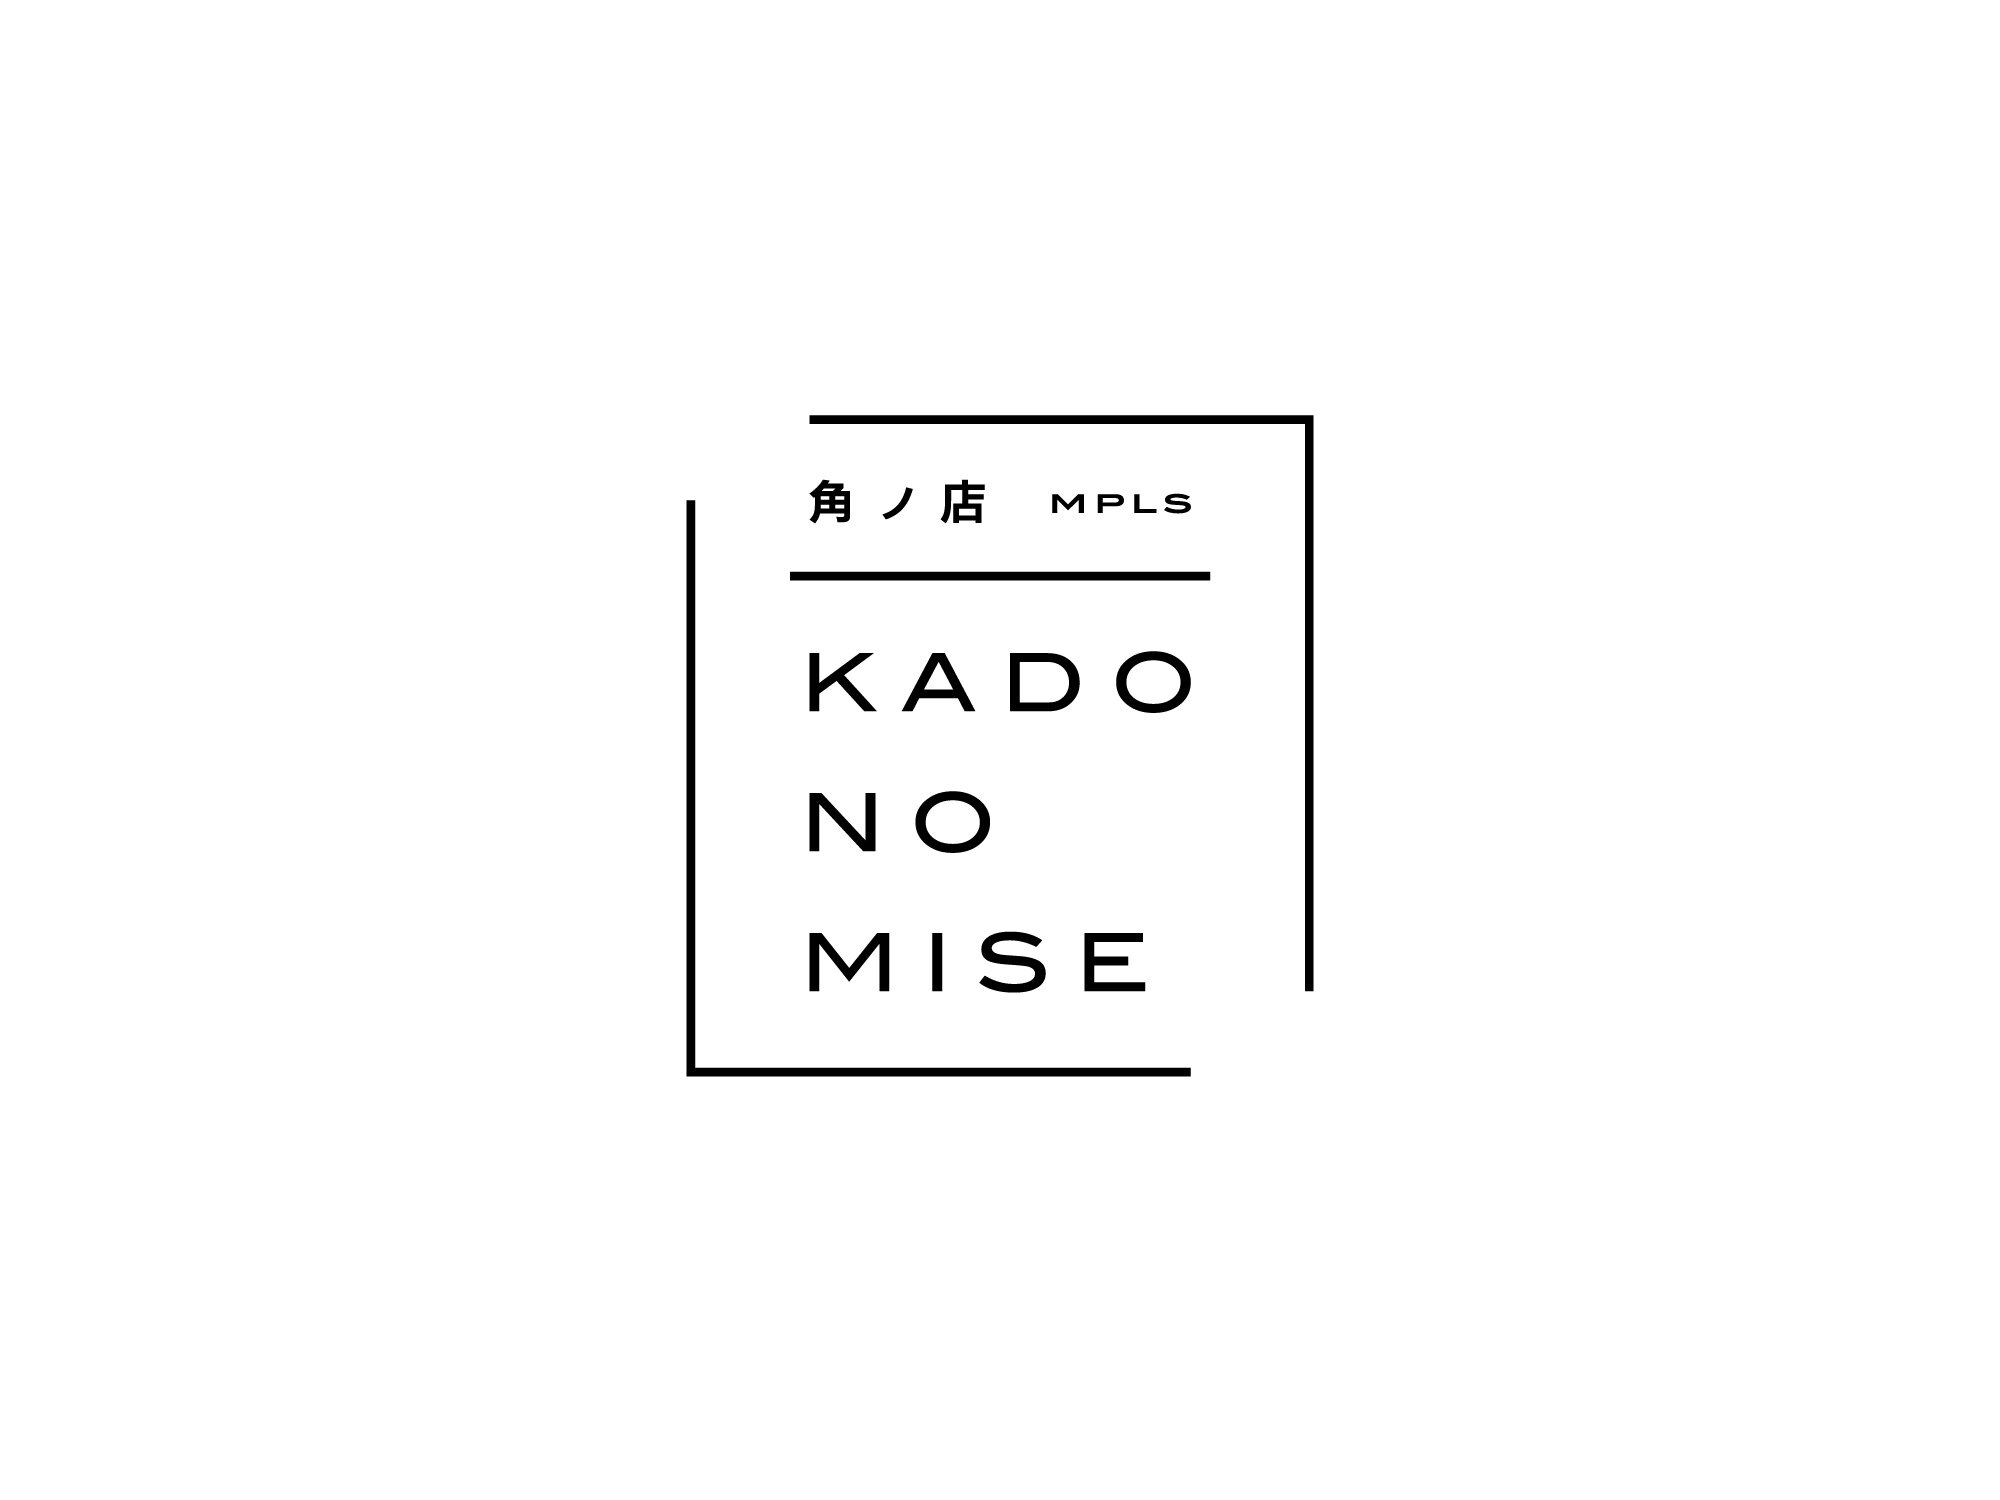 Kado Mise: North Loop Japanese Cuisine & Sushi — no Mise Japanese bar